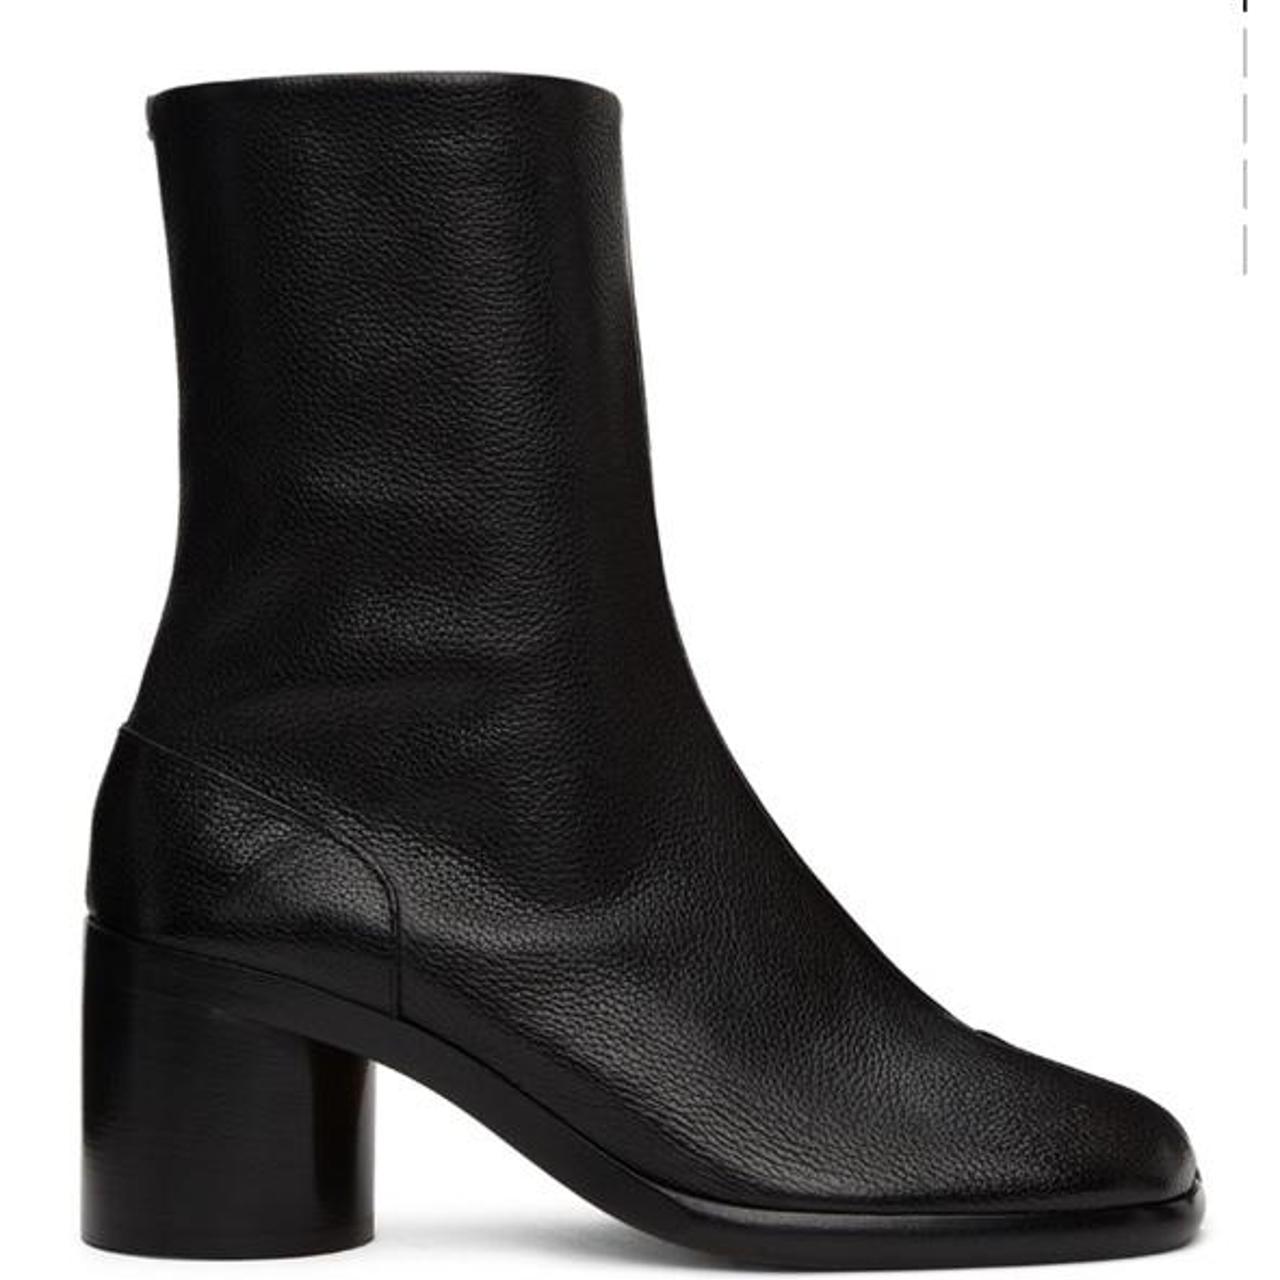 Product Image 1 - Maison Margiela Black Tabi boots